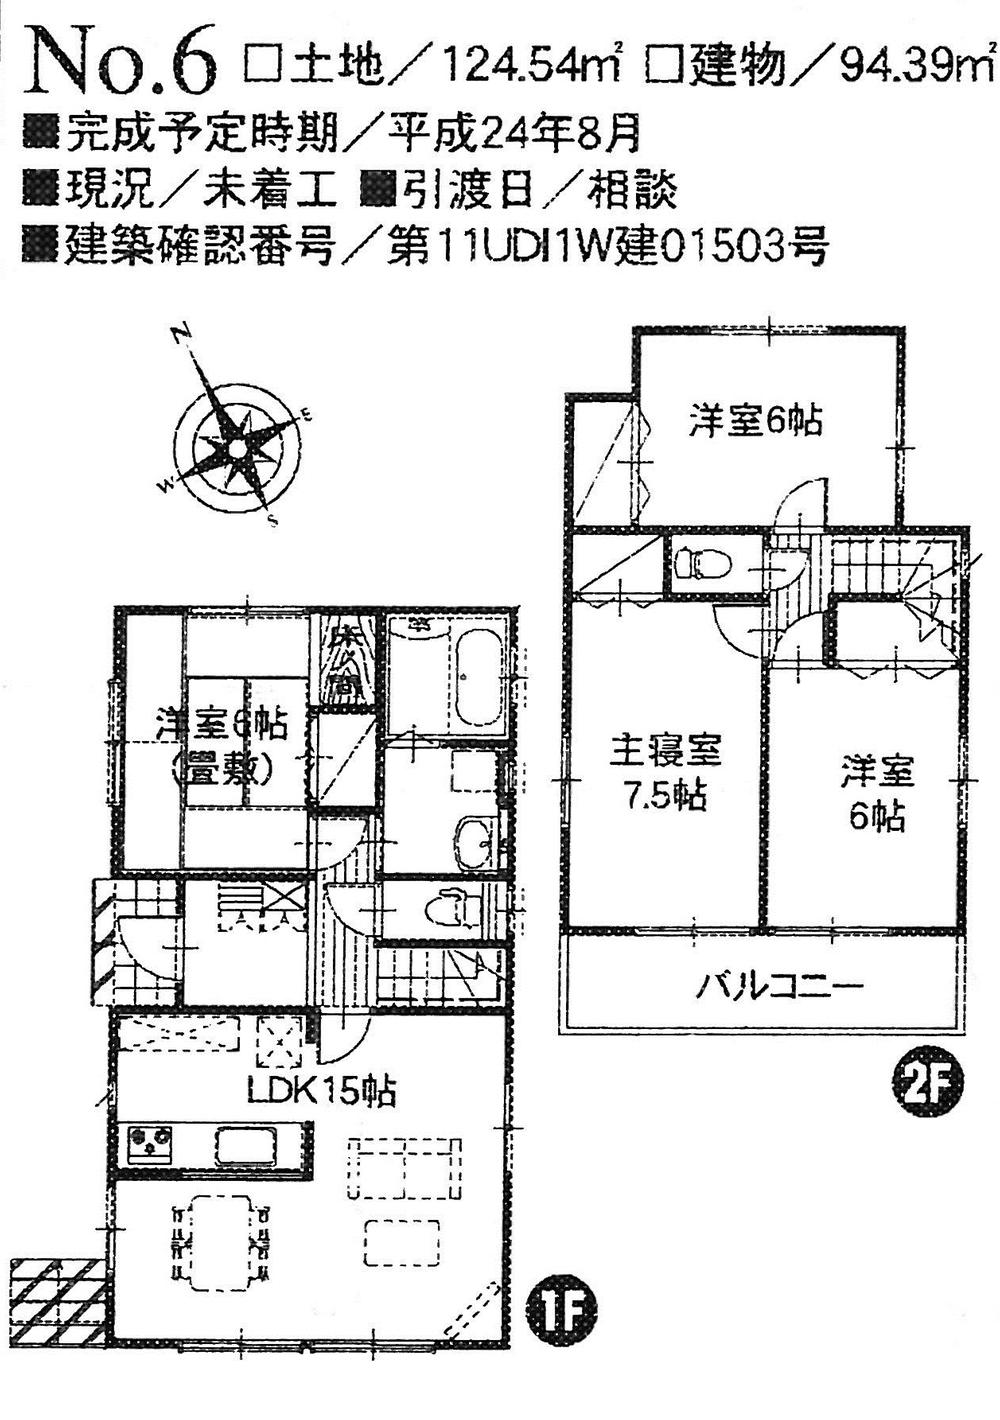 Floor plan. 27,900,000 yen, 4LDK, Land area 124.54 sq m , Building area 94.39 sq m 6 Building Floor Plan